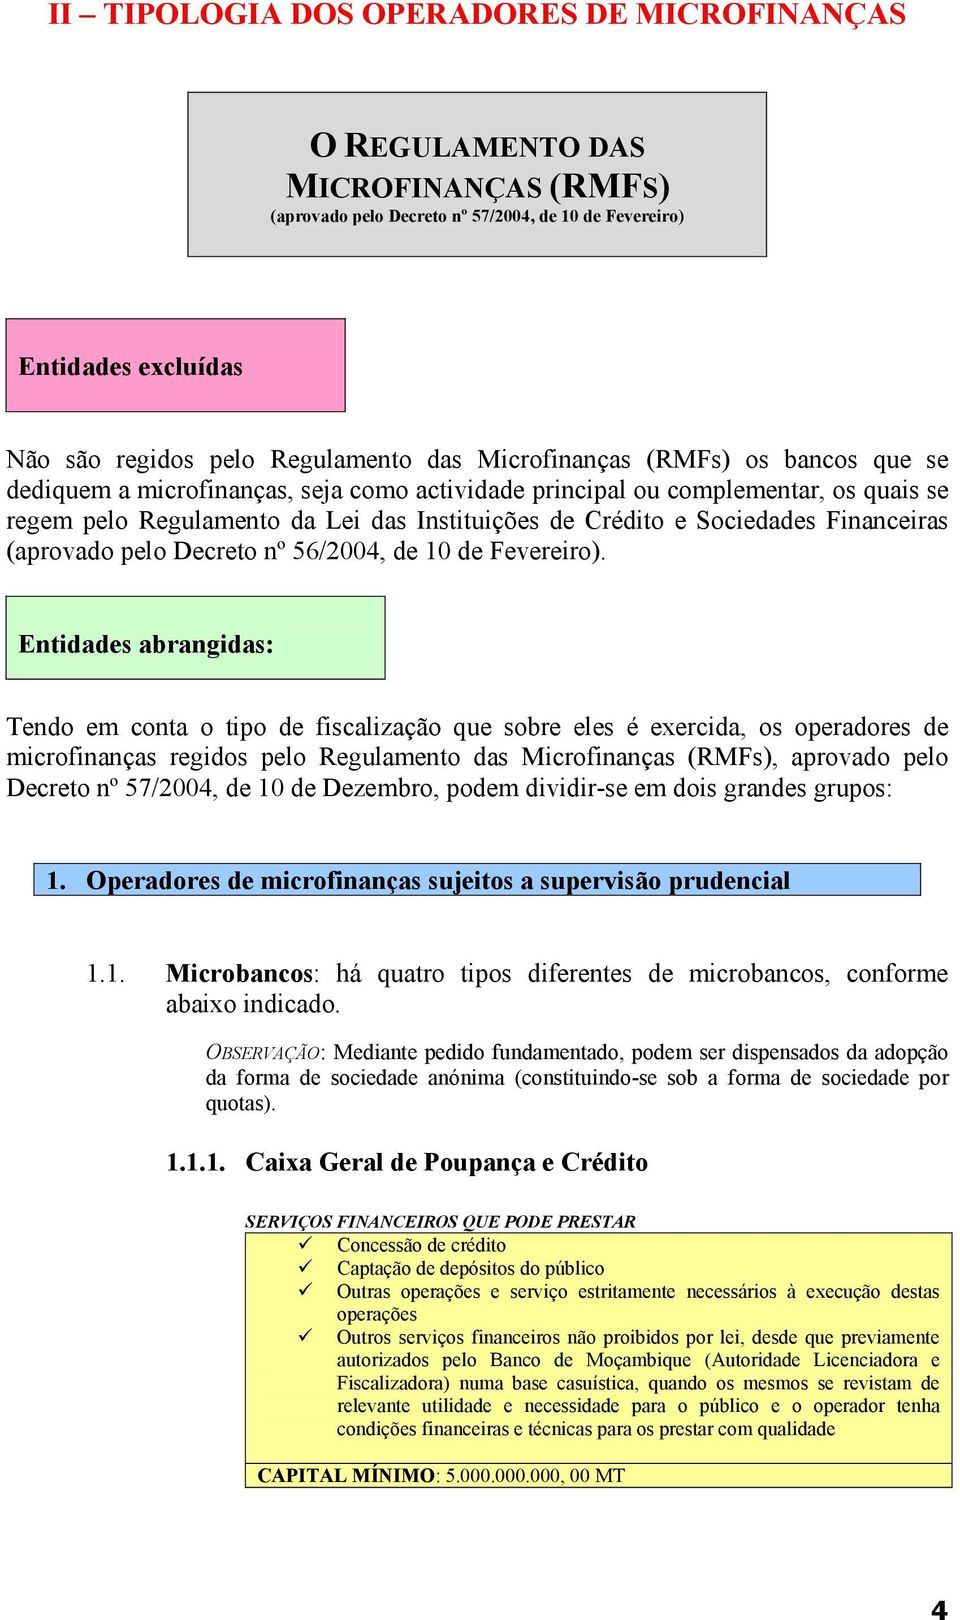 Financeiras (aprovado pelo Decreto nº 56/2004, de 10 de Fevereiro).